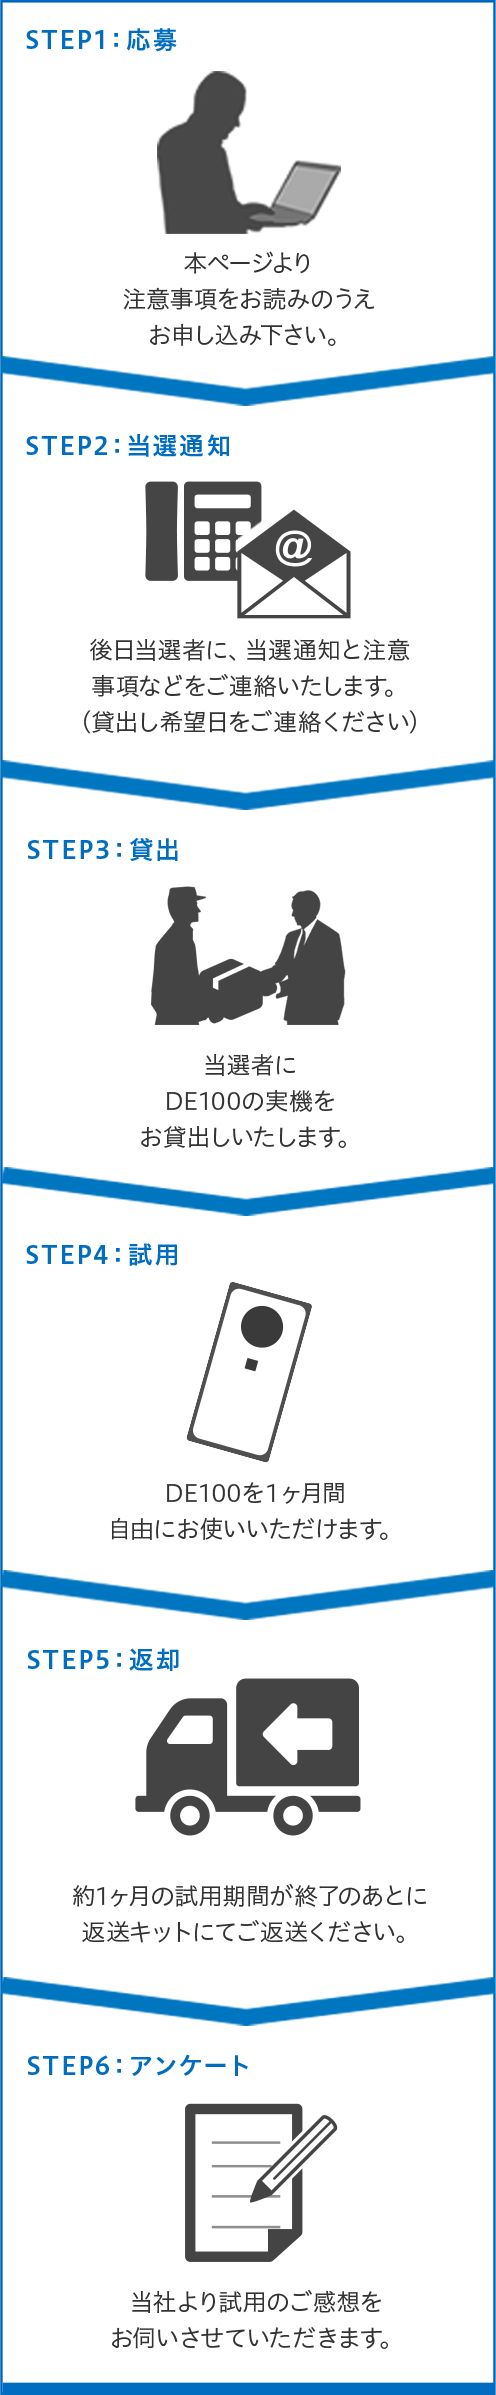 STEP1：応募 本ページより注意事項をお読みのうえお申し込みください。 STEP2：当選通知 後日当選者に、当選通知と注意事項などをご連絡いたします。(貸出し希望日をご連絡ください) STEP3：貸出 当選者にDE100の実機をお貸出しいたします。 STEP4：試用 DE100を1ヵ月間自由にお使いいただけます。 STEP5：返却 約1ヵ月の試用期間が終了のあとに返送キットにてご返送ください。 STEP6：アンケート 当社より試用のご感想をお伺いさせていただきます。